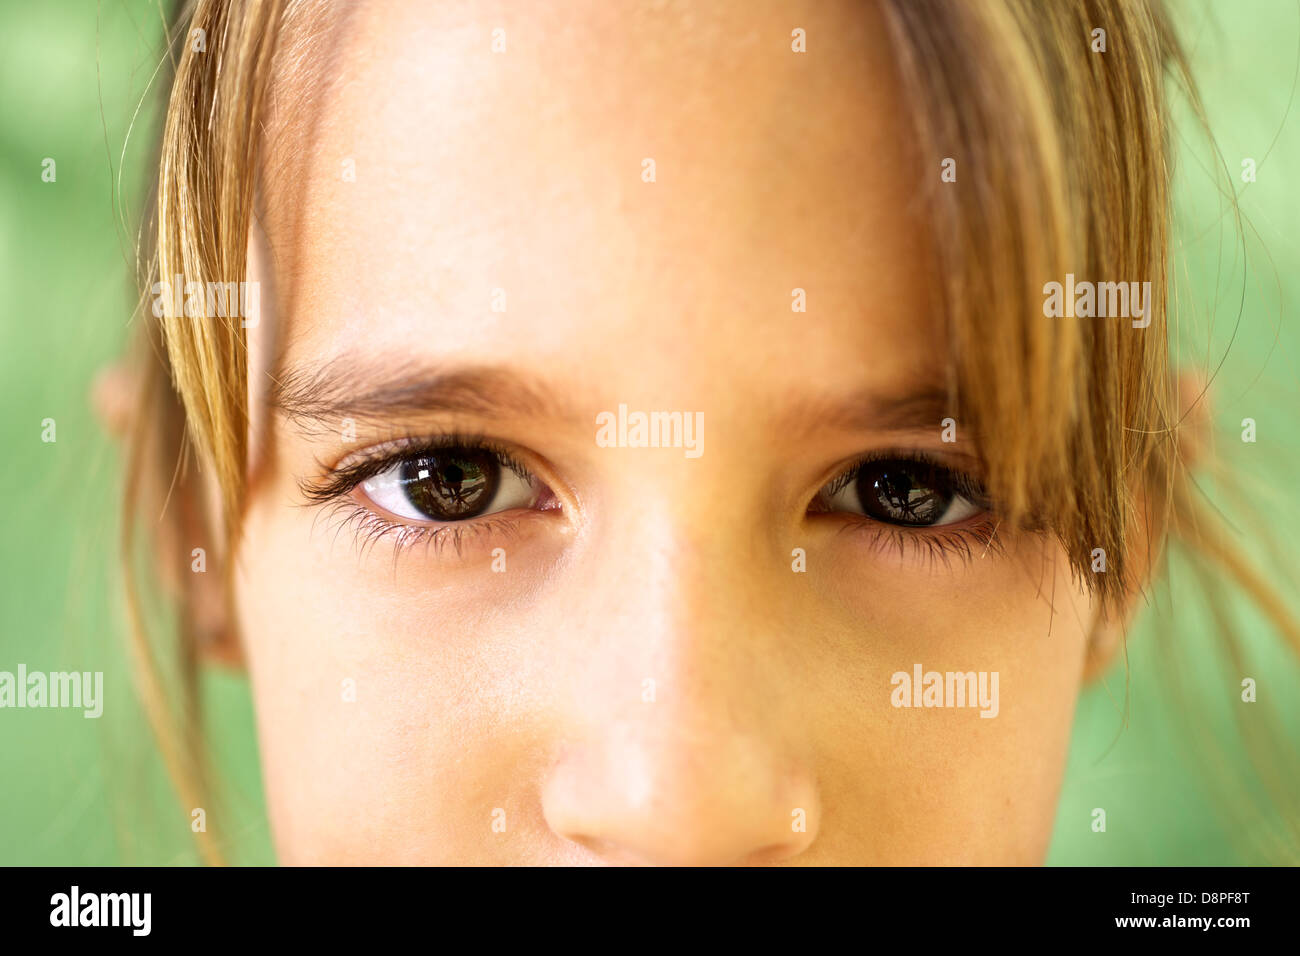 Les jeunes et les émotions, portrait of serious girl looking at camera. Libre d'yeux Banque D'Images